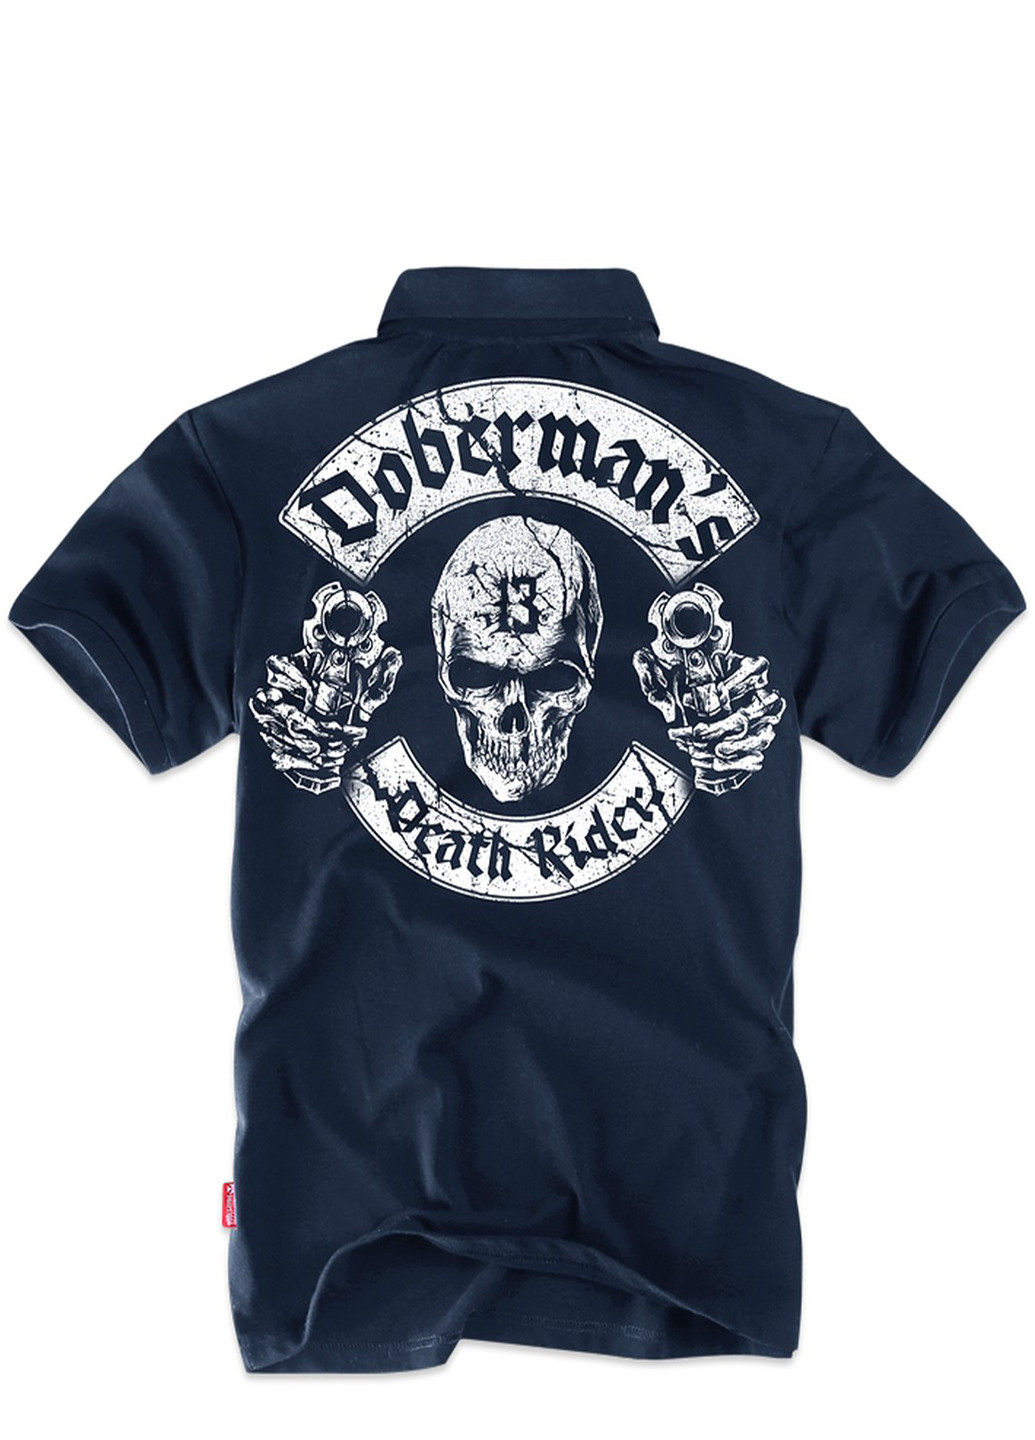 Синяя футболка-футболка поло dobermans death rider colt tsp141nv для мужчин Dobermans Aggressive